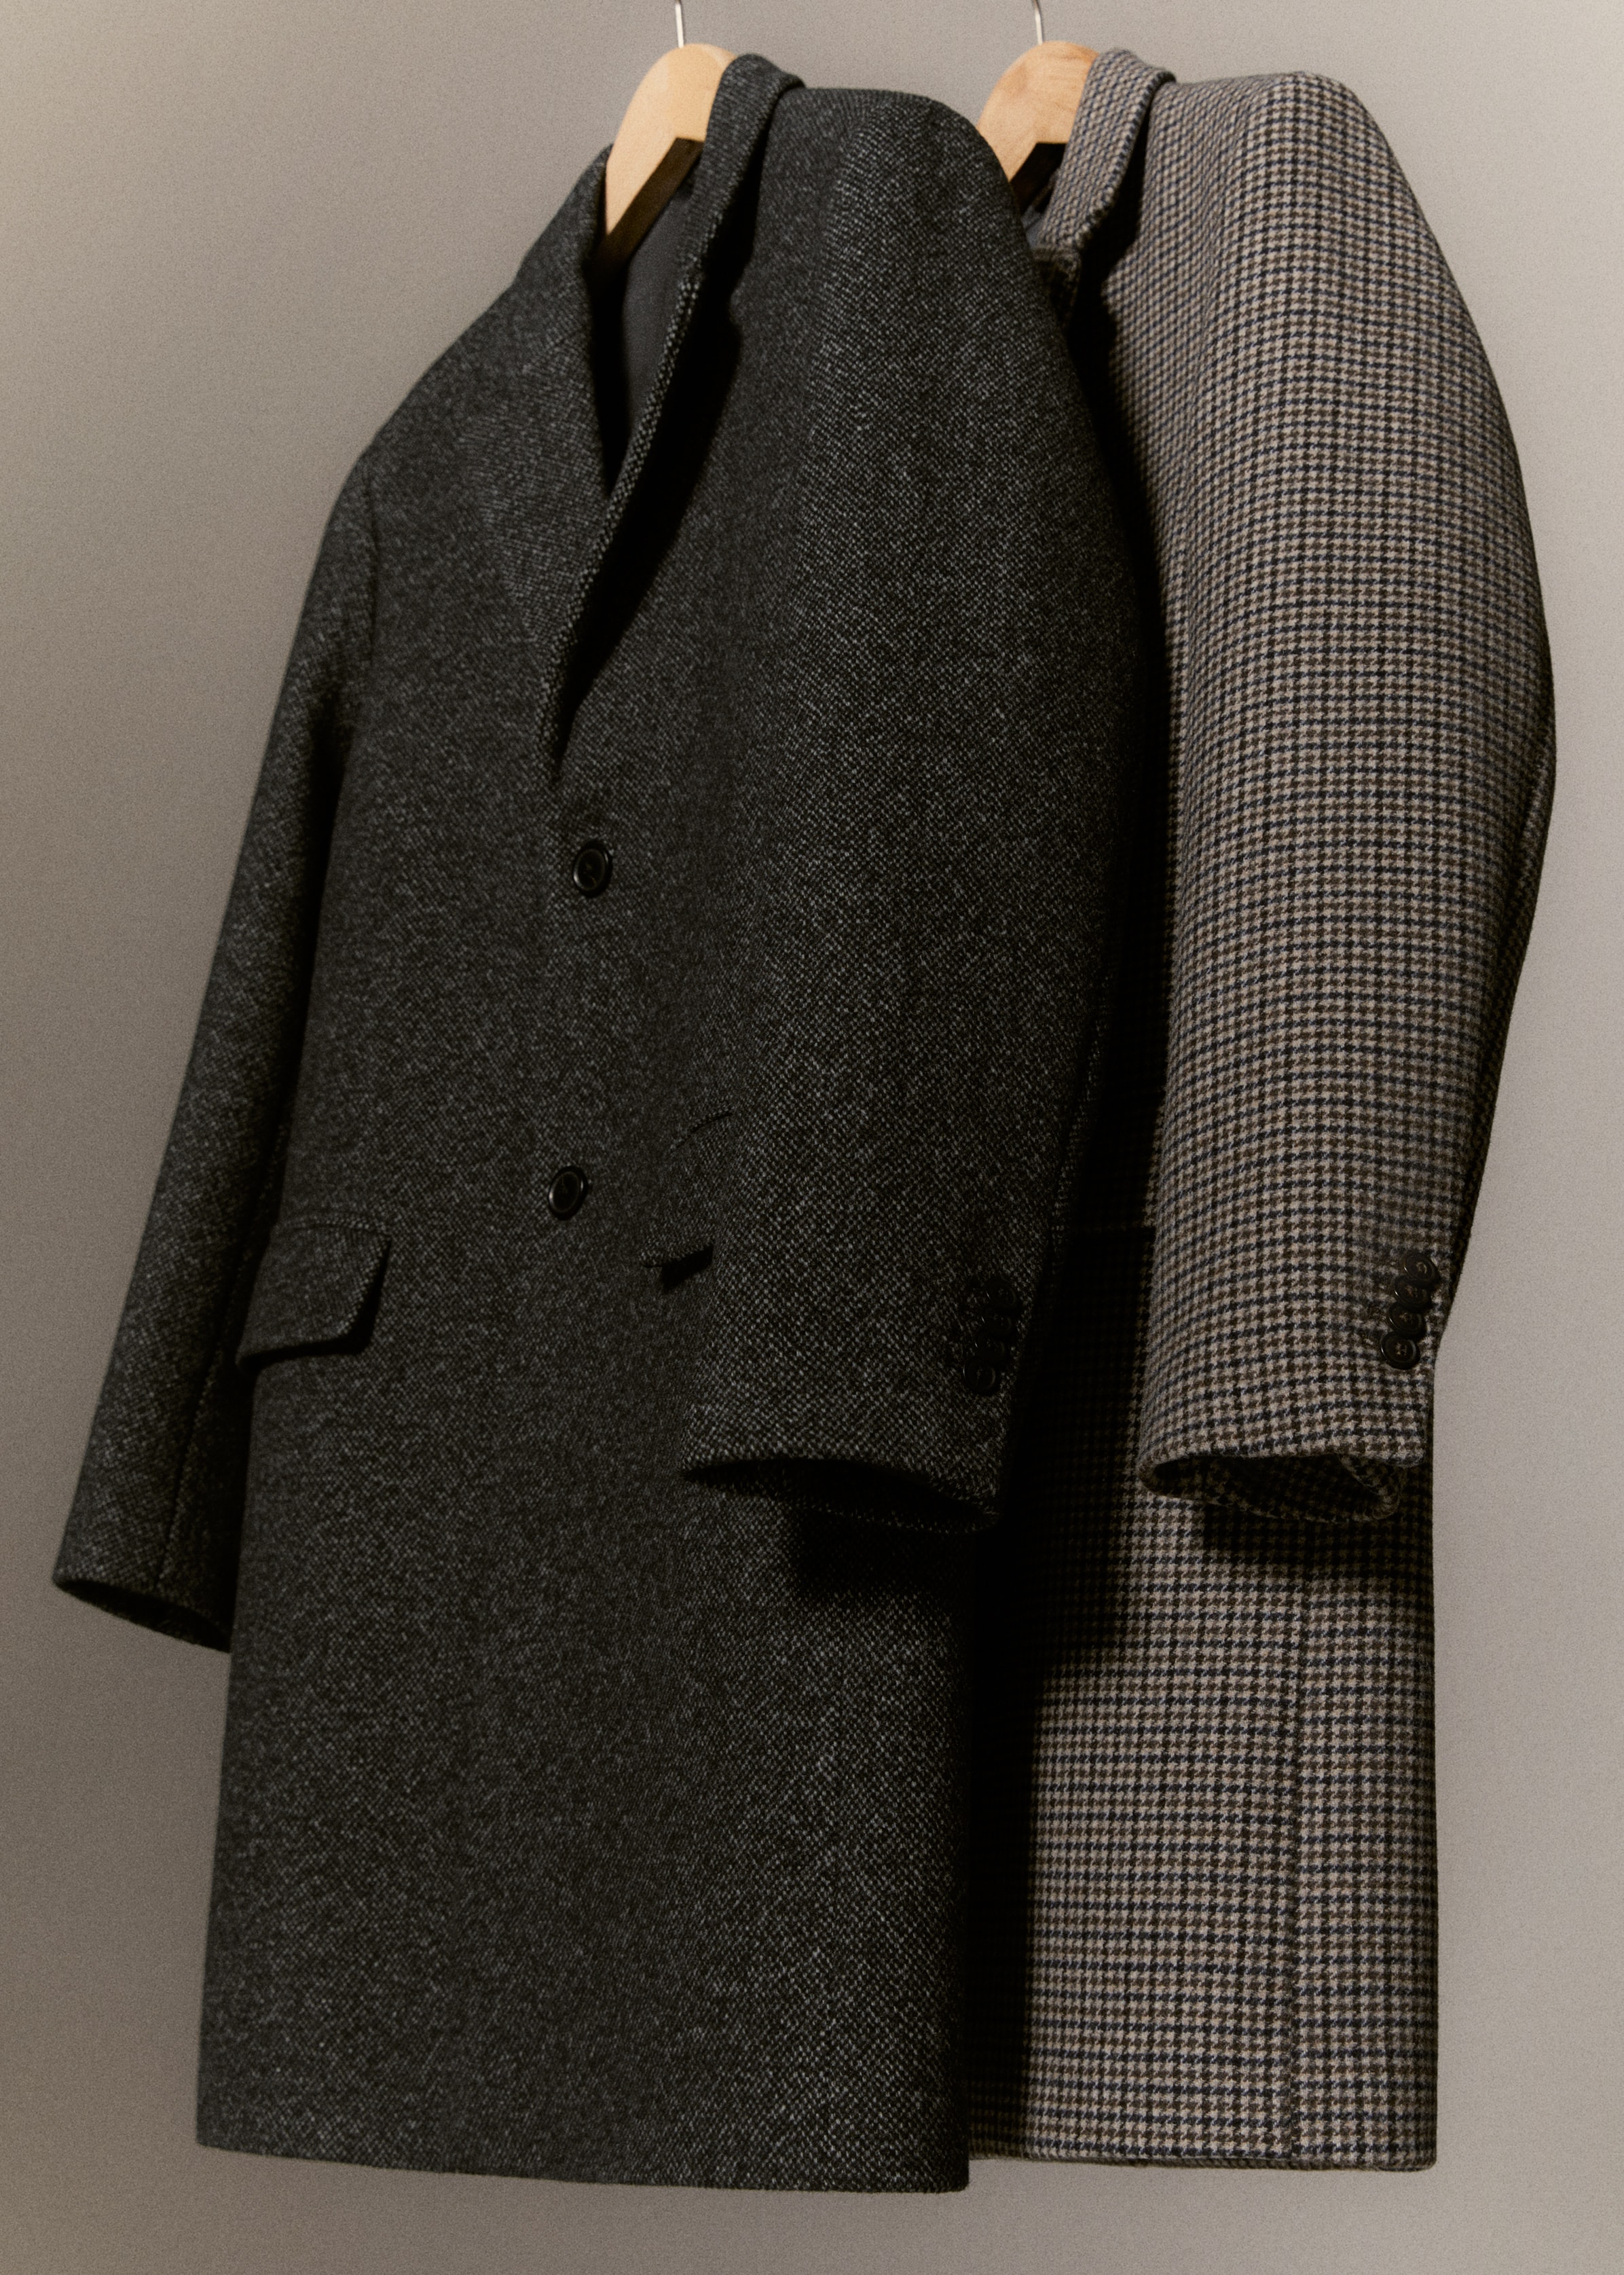 Mramorovaný vlněný kabát - Detail zboží 9